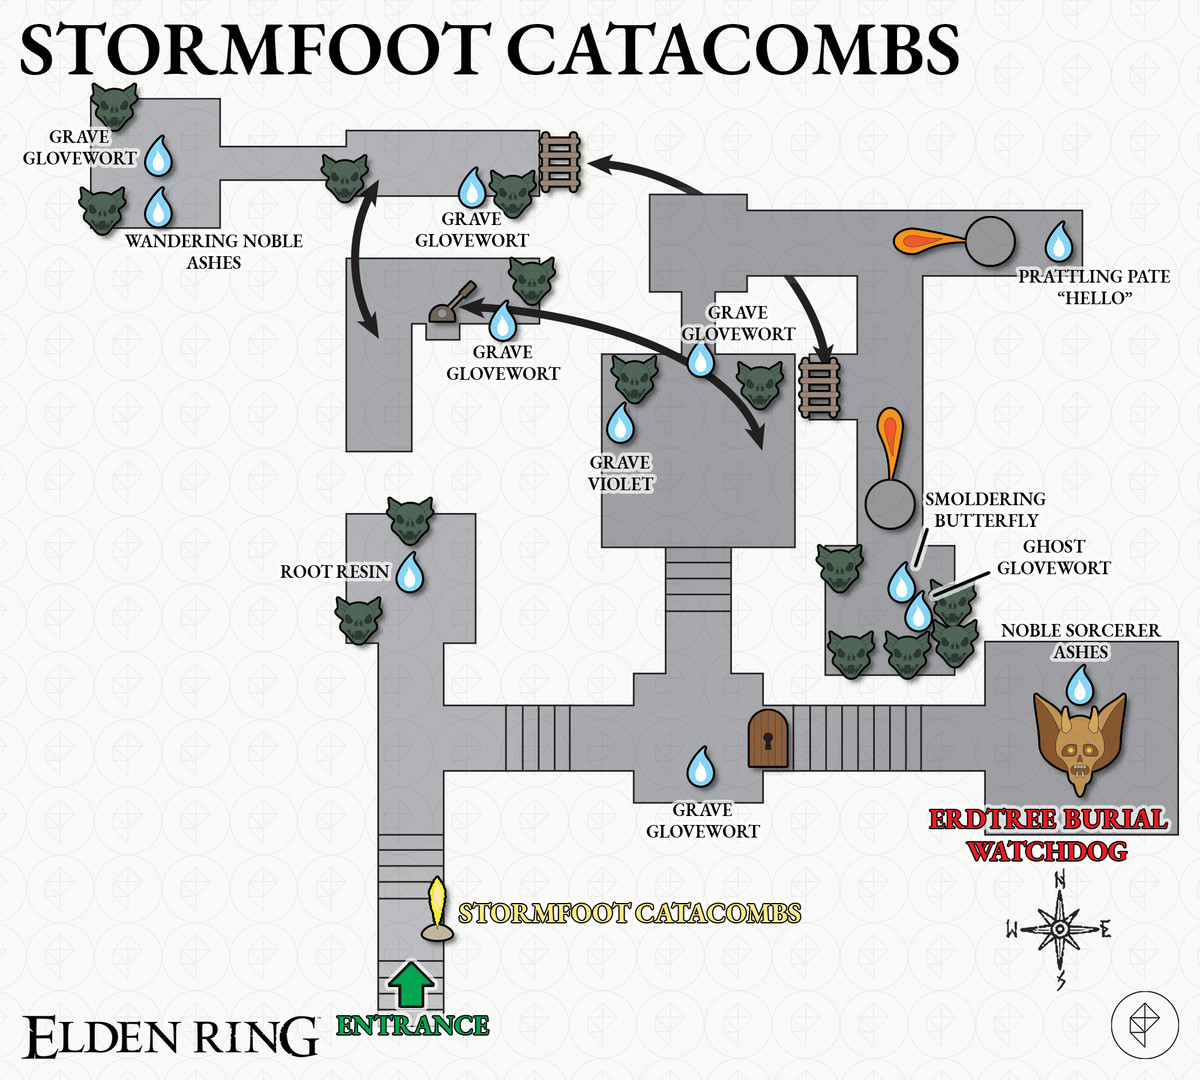 艾爾登法環指南：Stormfoot Catacombs攻略和提示